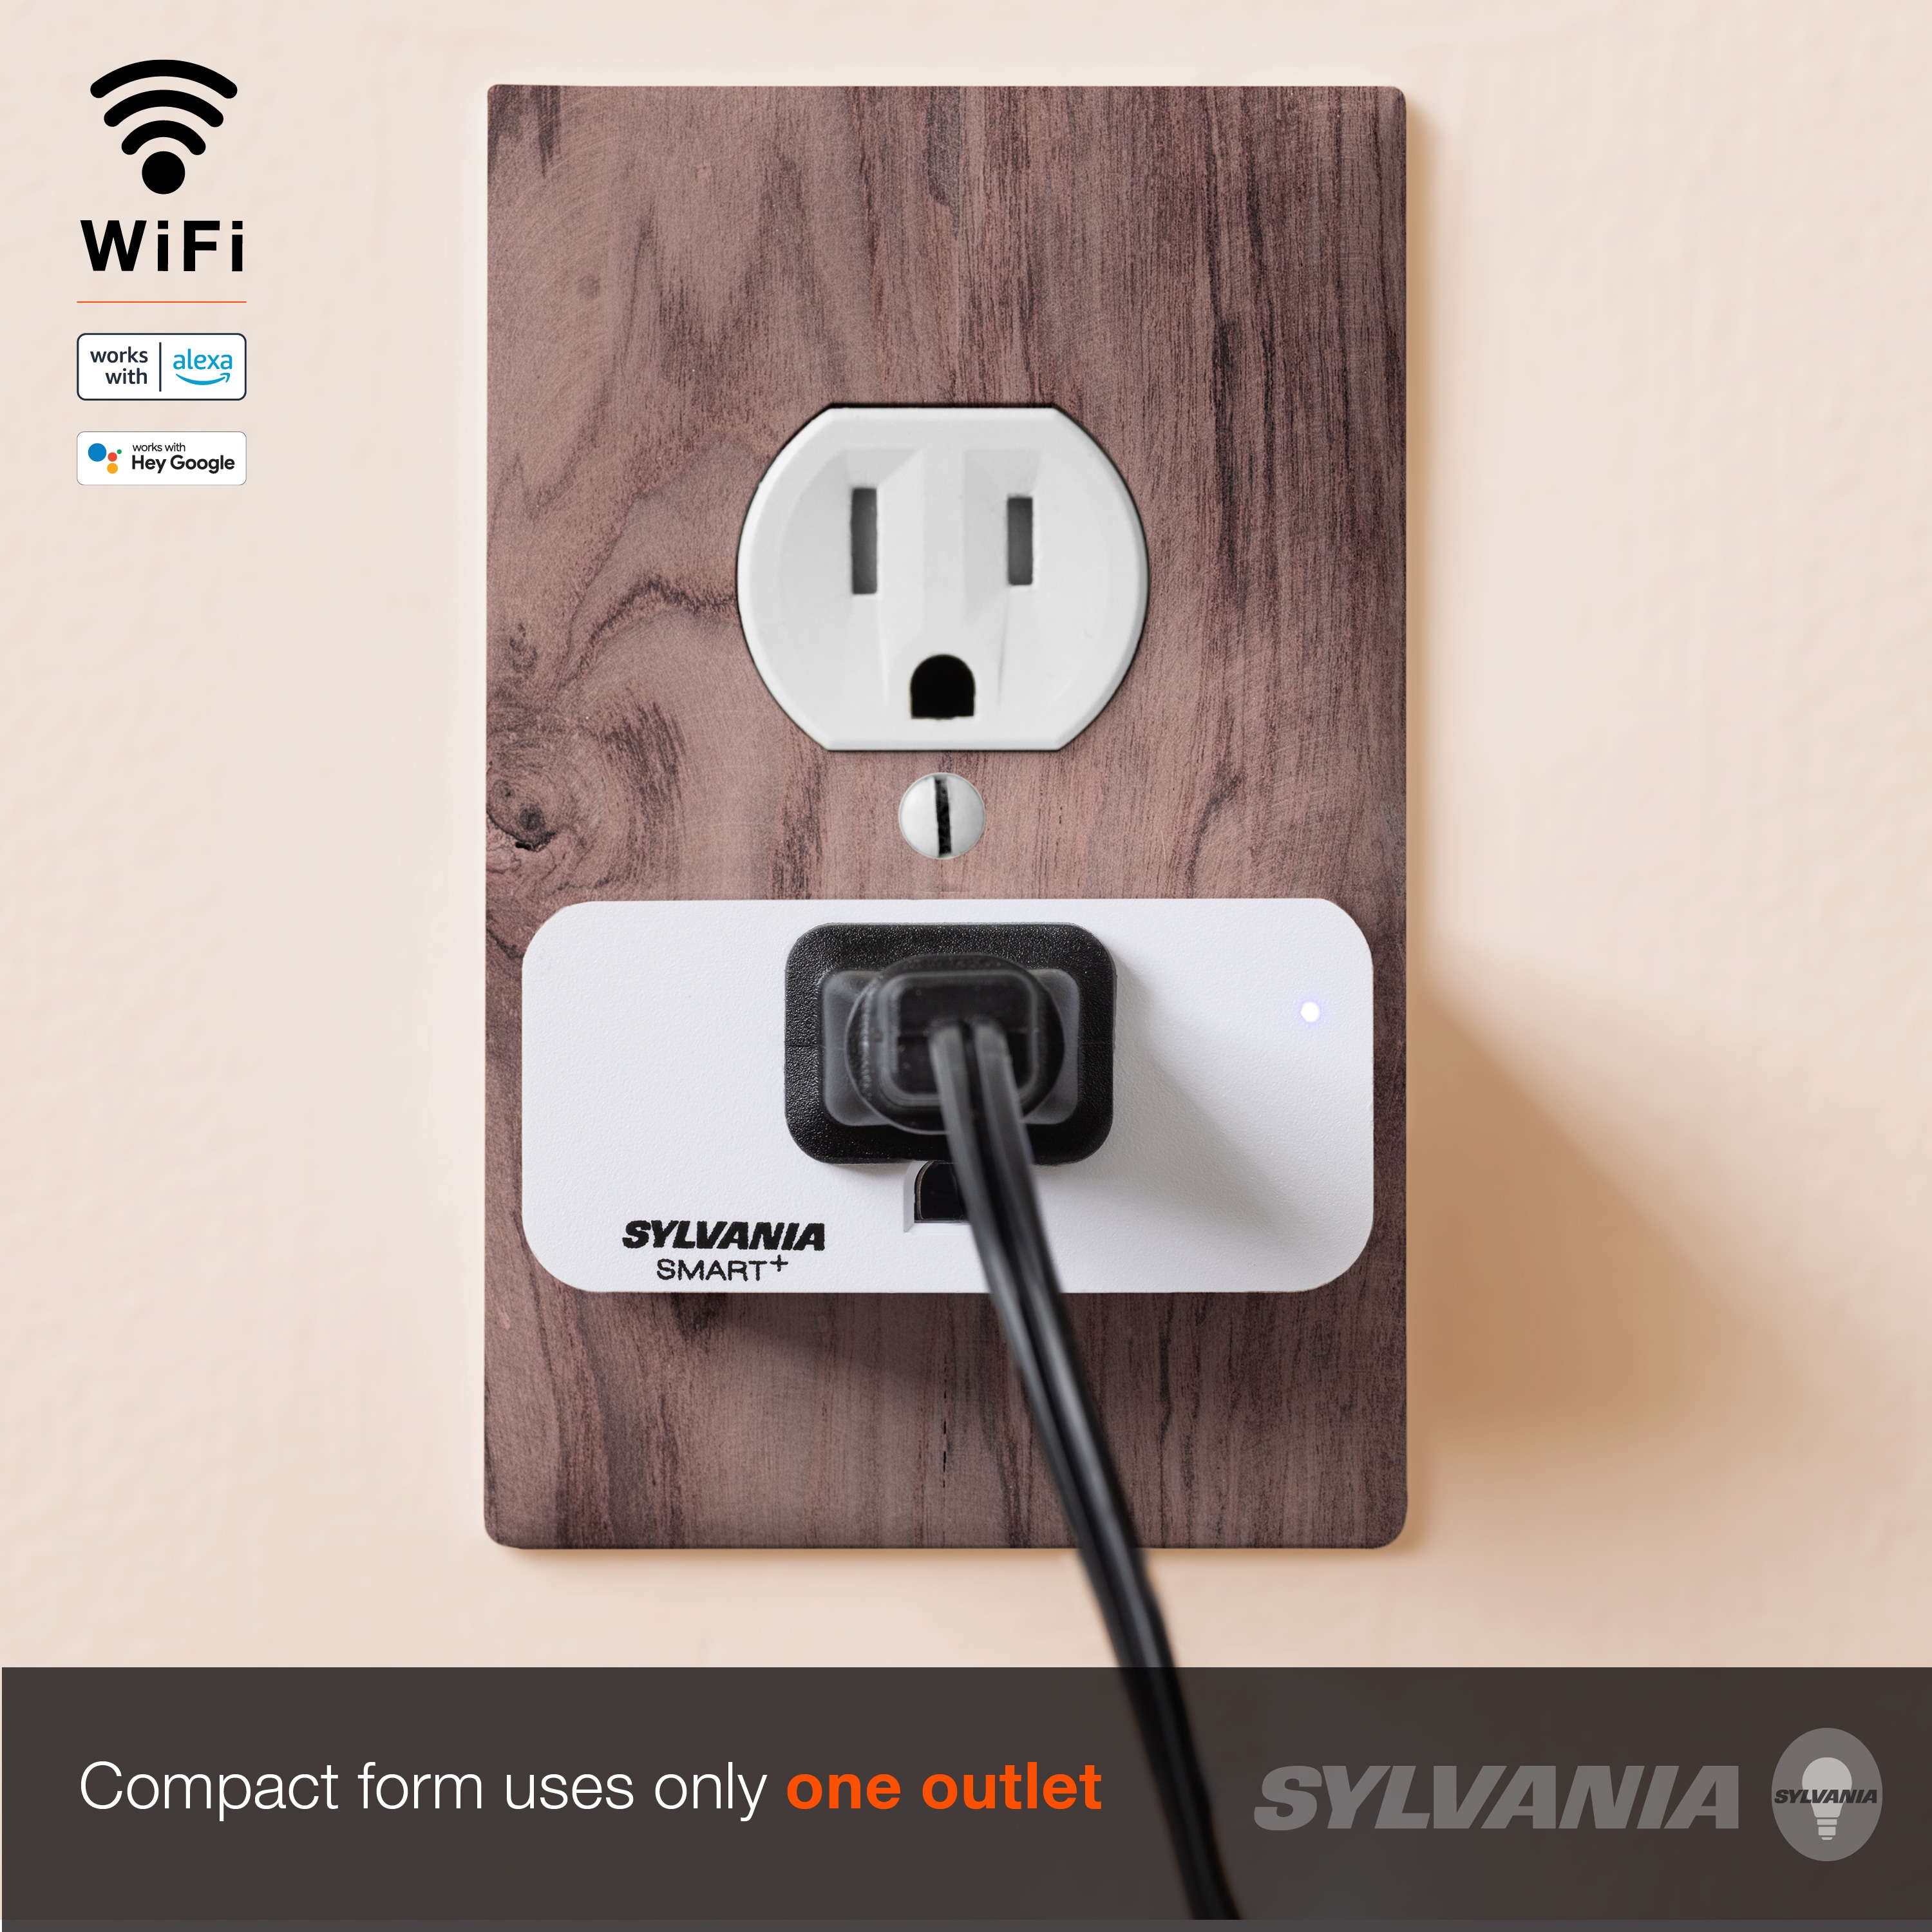 Enbrighten 125-Volt 1-Outlet Indoor Smart Plug